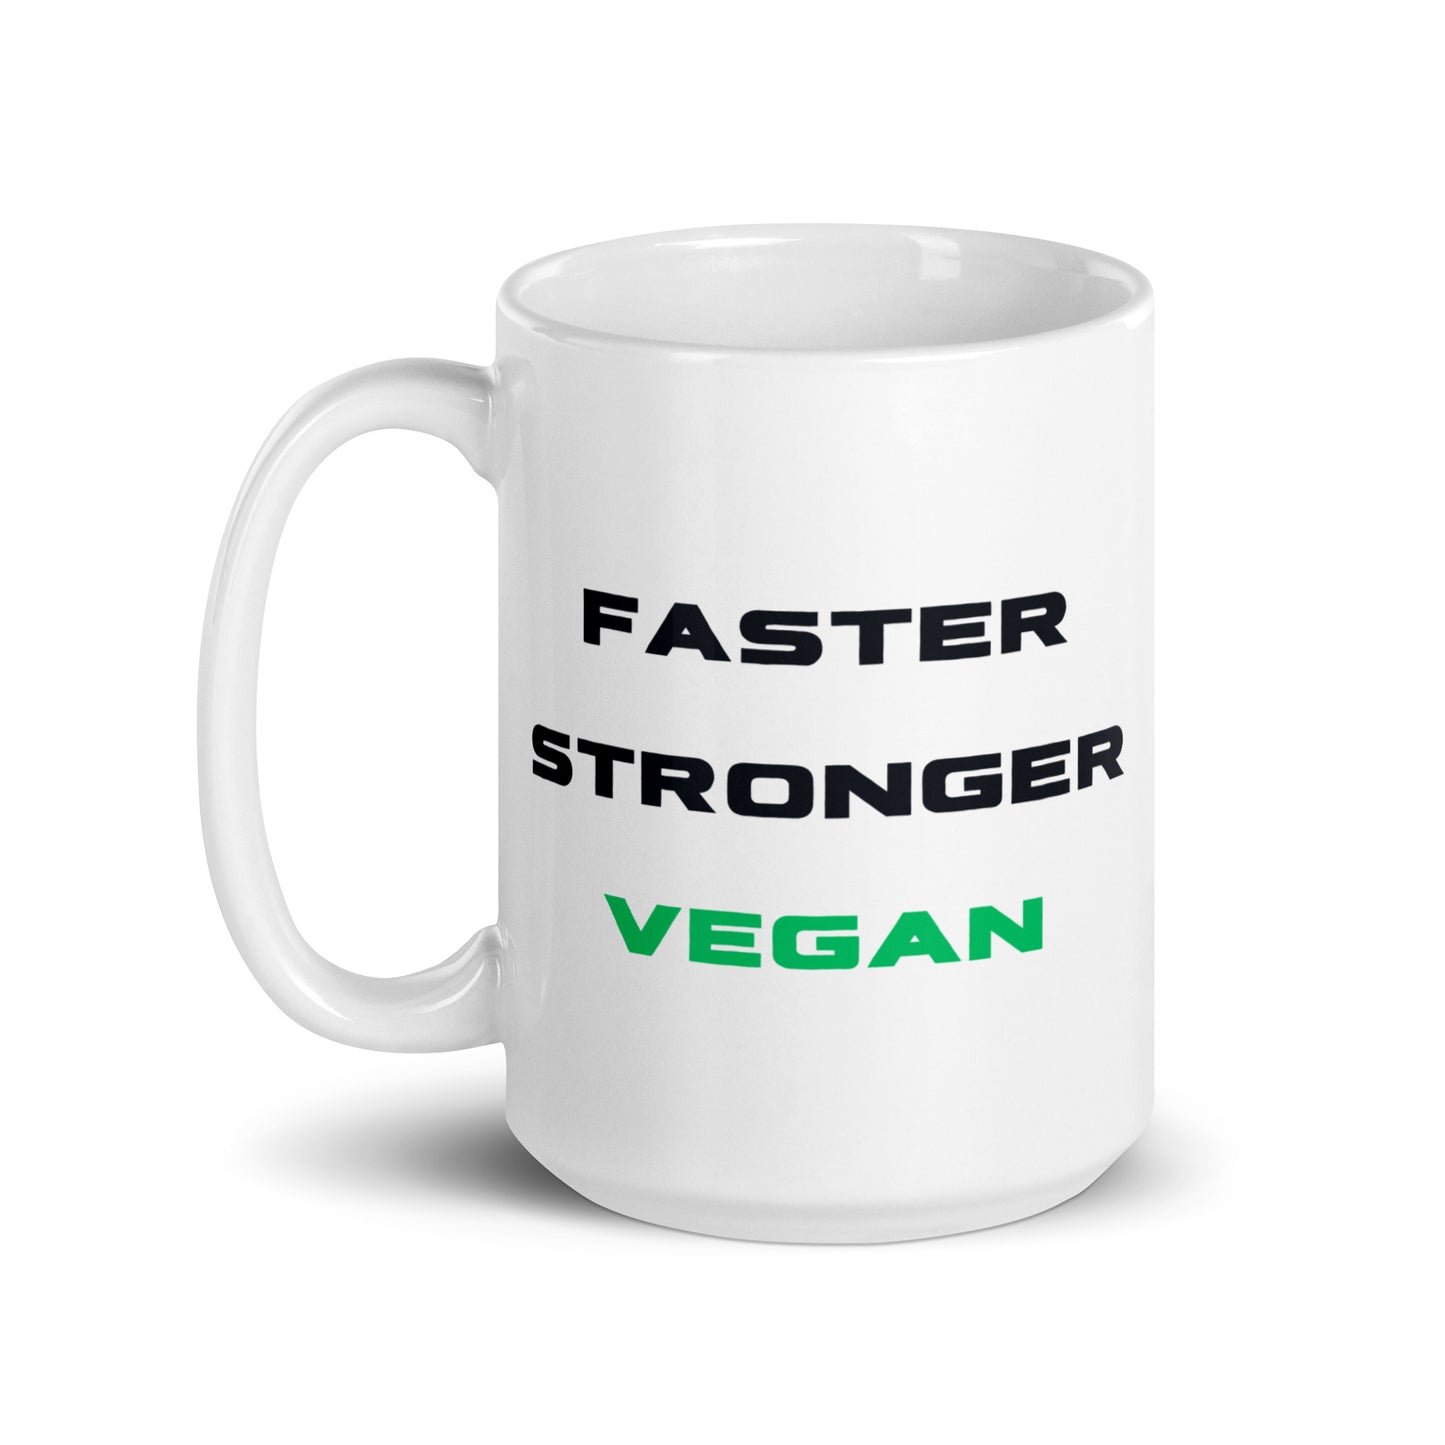 Faster Stronger Vegan - Vegan Coffee Mug